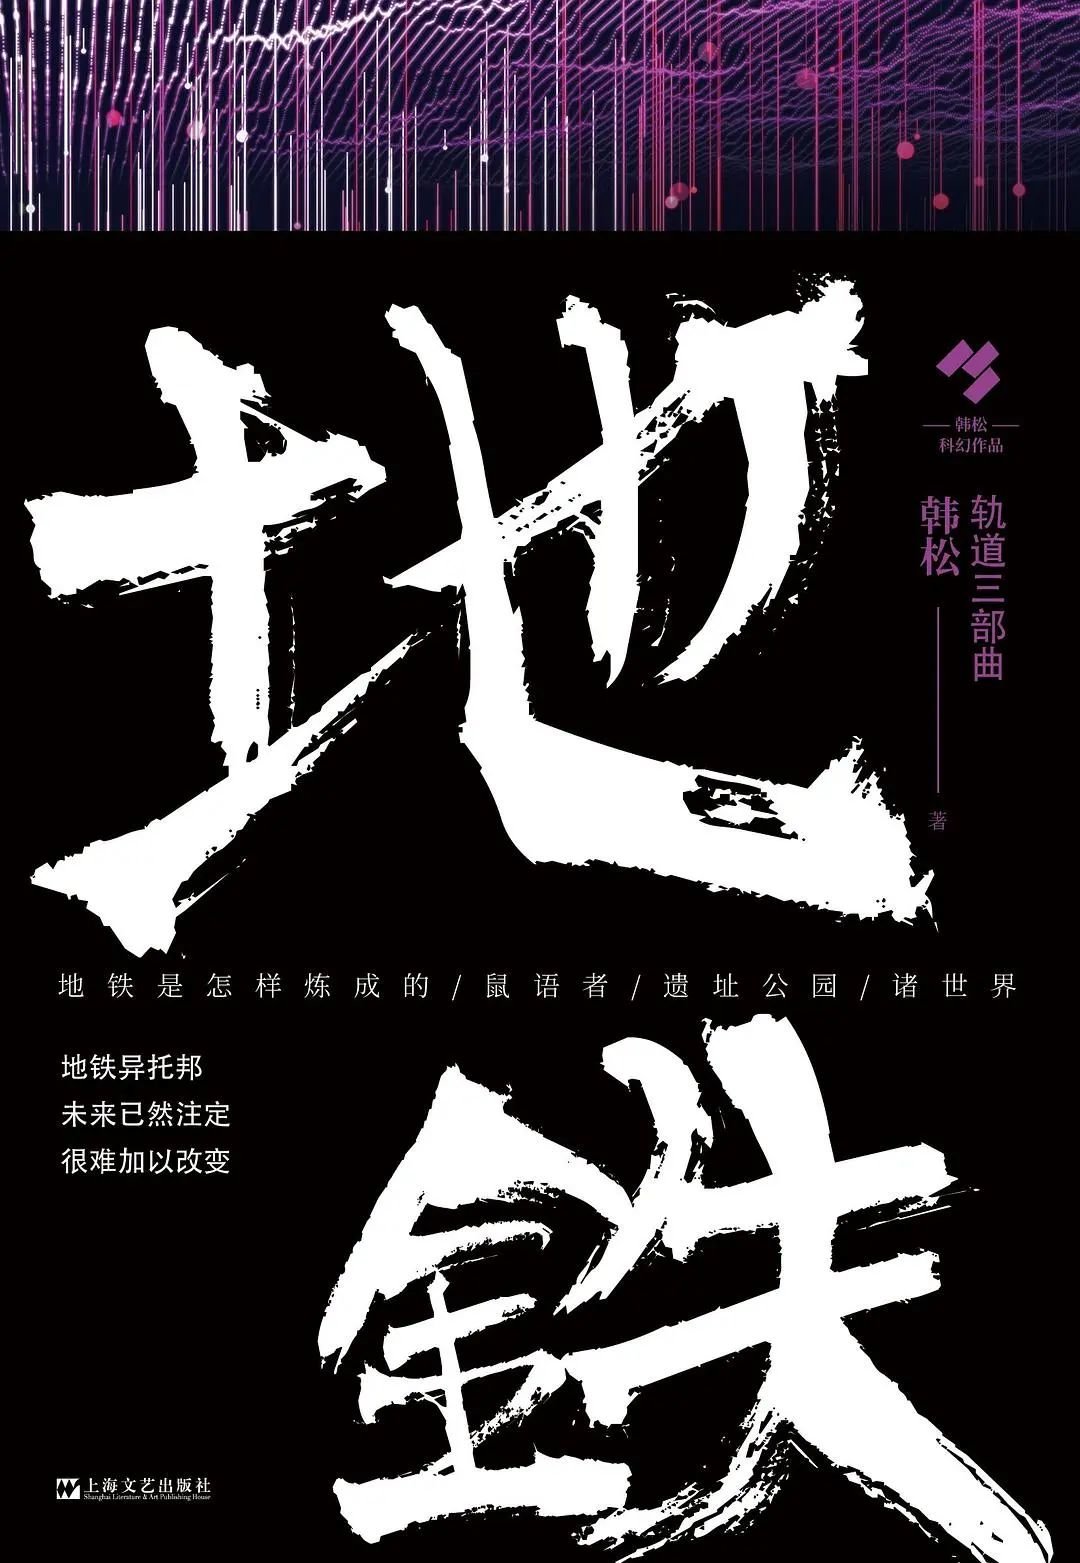 《地铁》韩松 著 / 上海文艺出版社 出版/ 2020-7-30